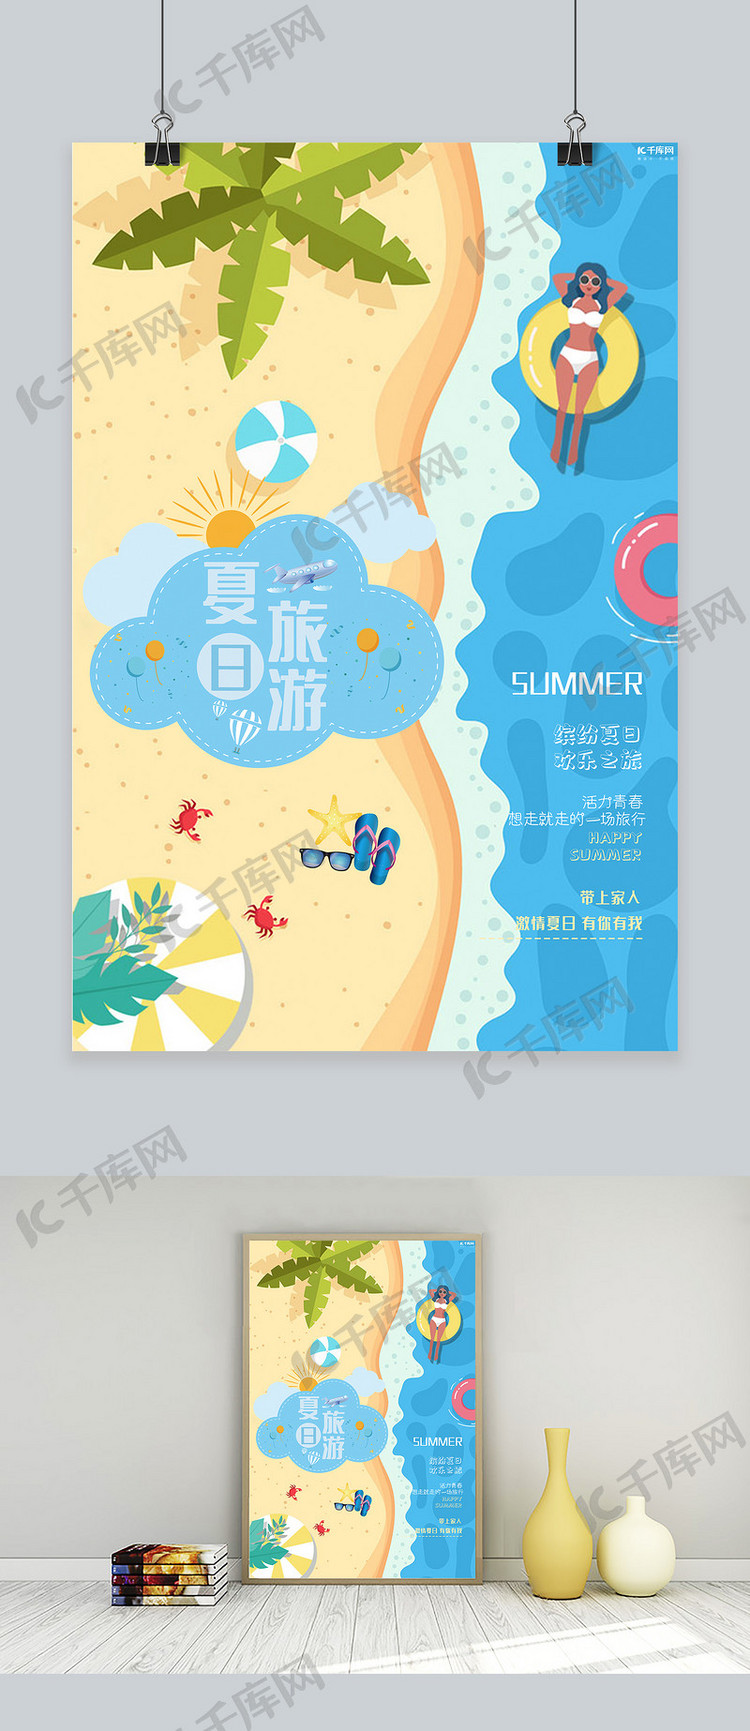 夏日旅游沙滩游泳宣传海报